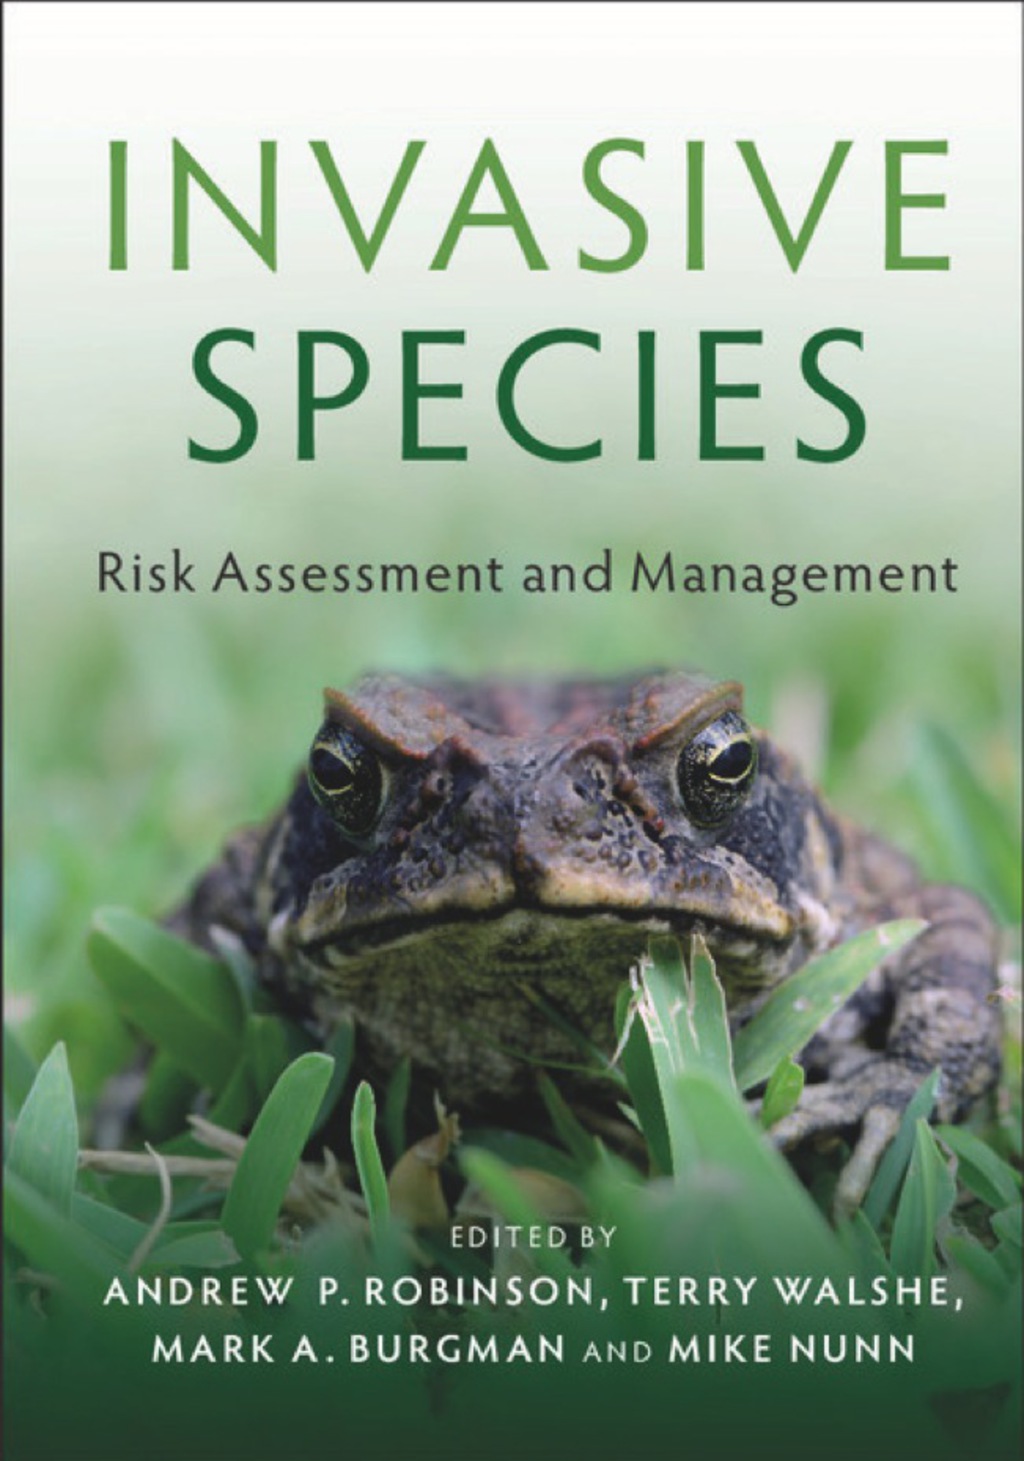 Invasive Species (eBook) - Andrew P. Robinson,